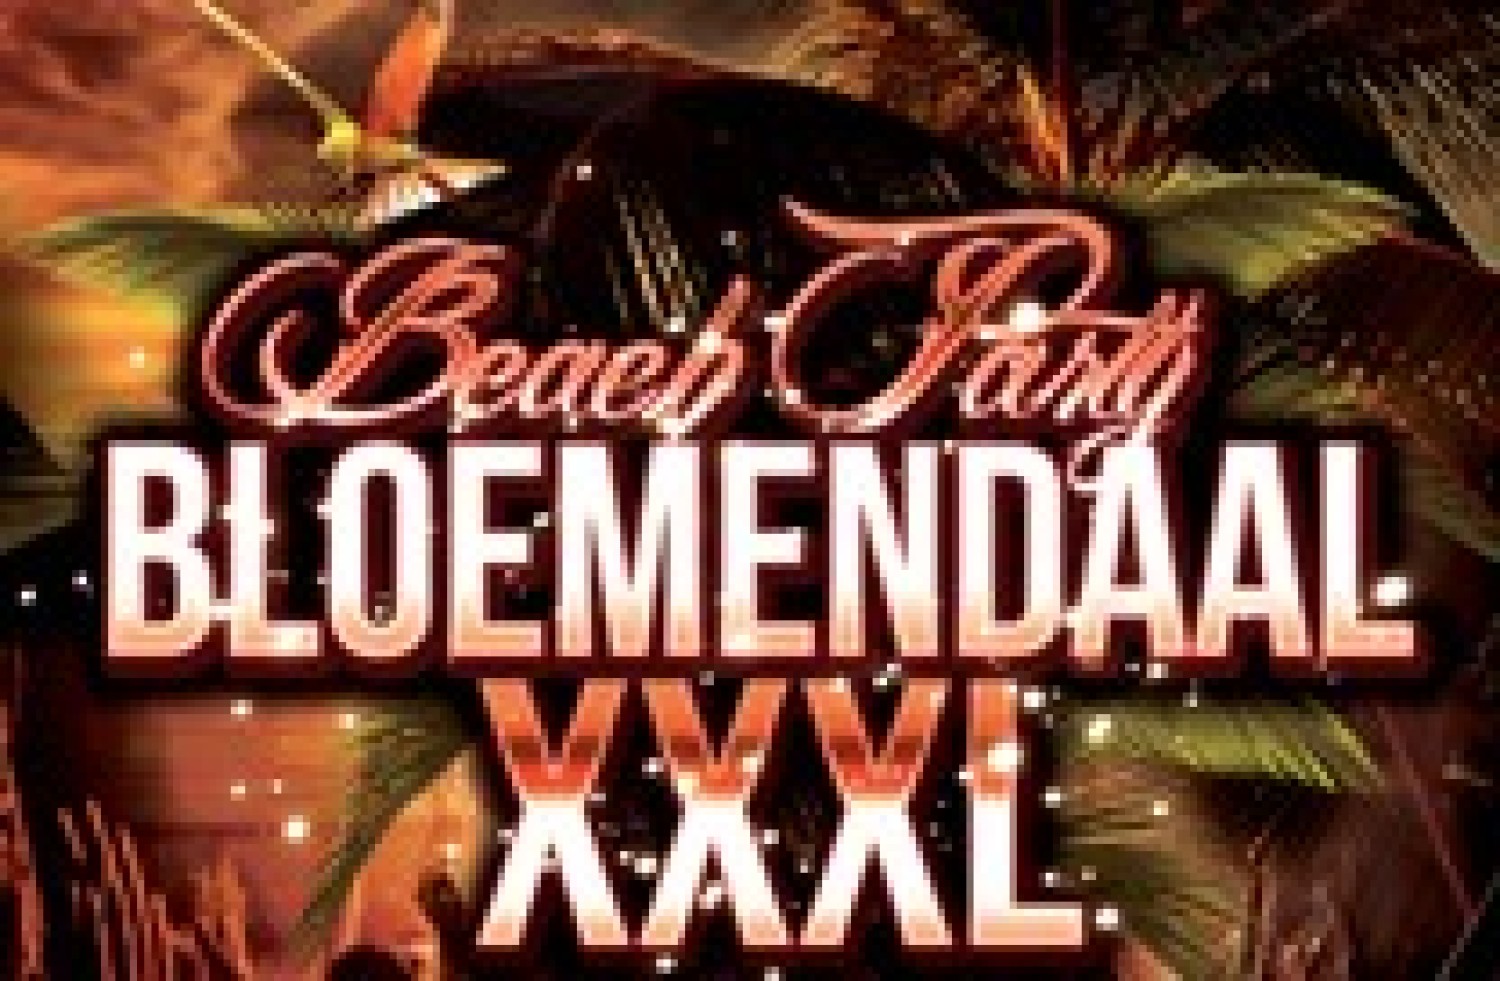 Party nieuws: Beach Party Bloemendaal XXXL bijna uitverkocht!